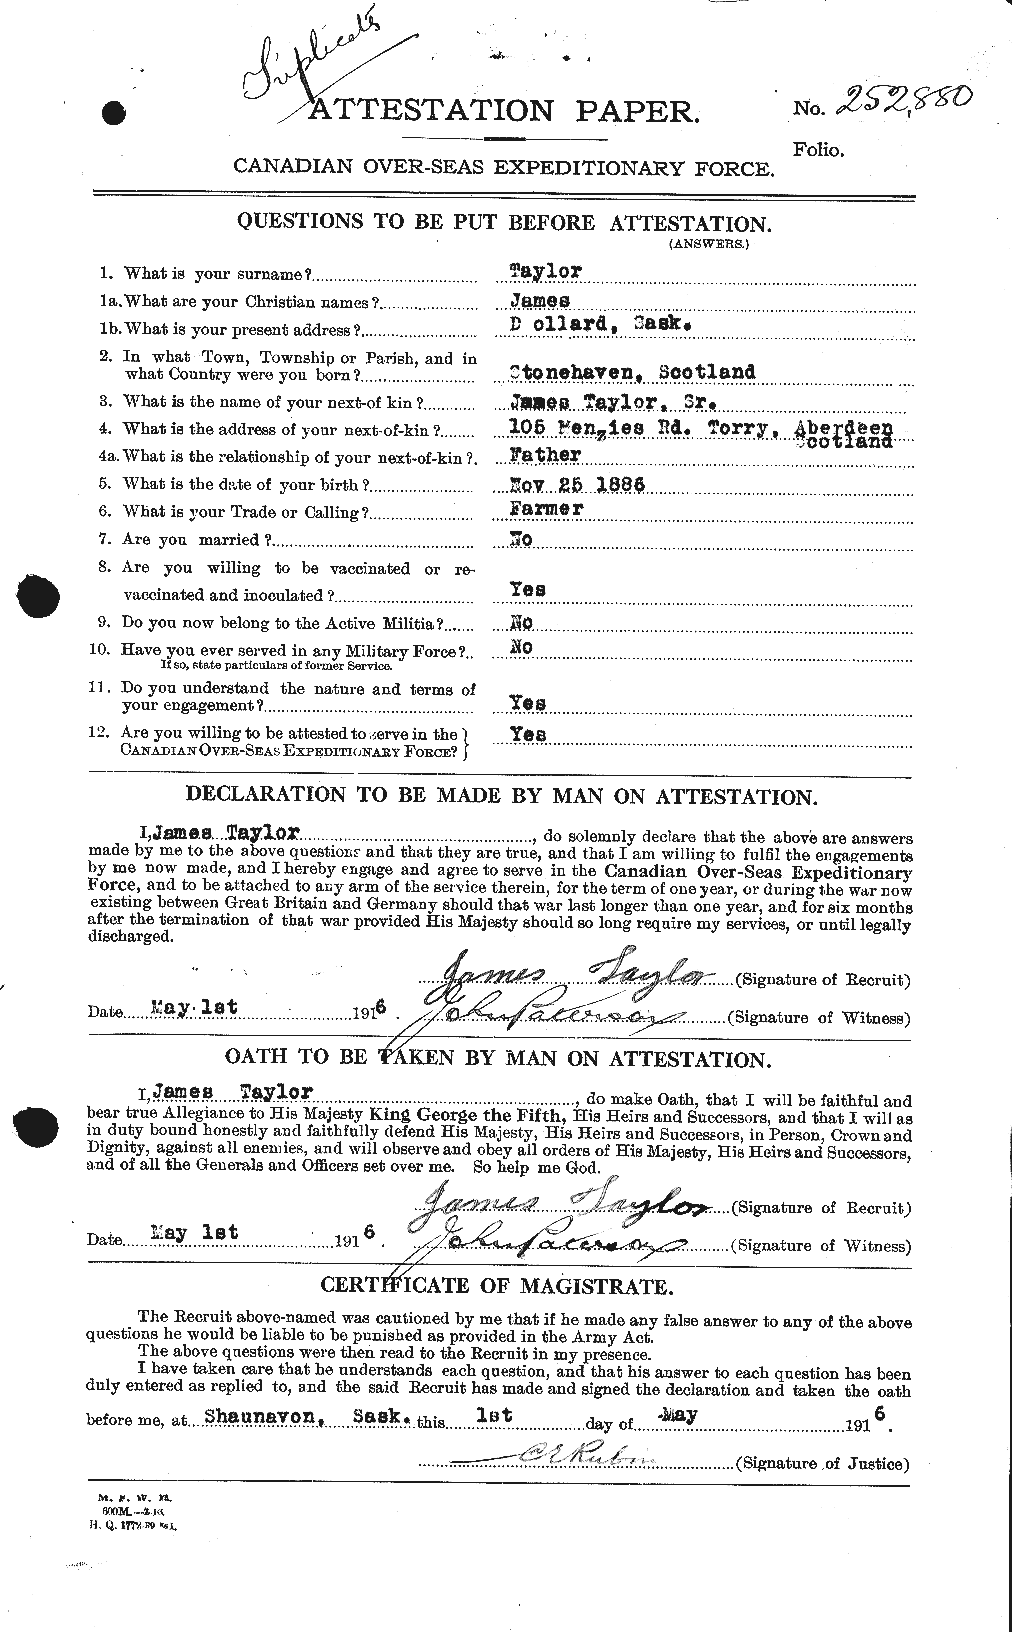 Dossiers du Personnel de la Première Guerre mondiale - CEC 626691a